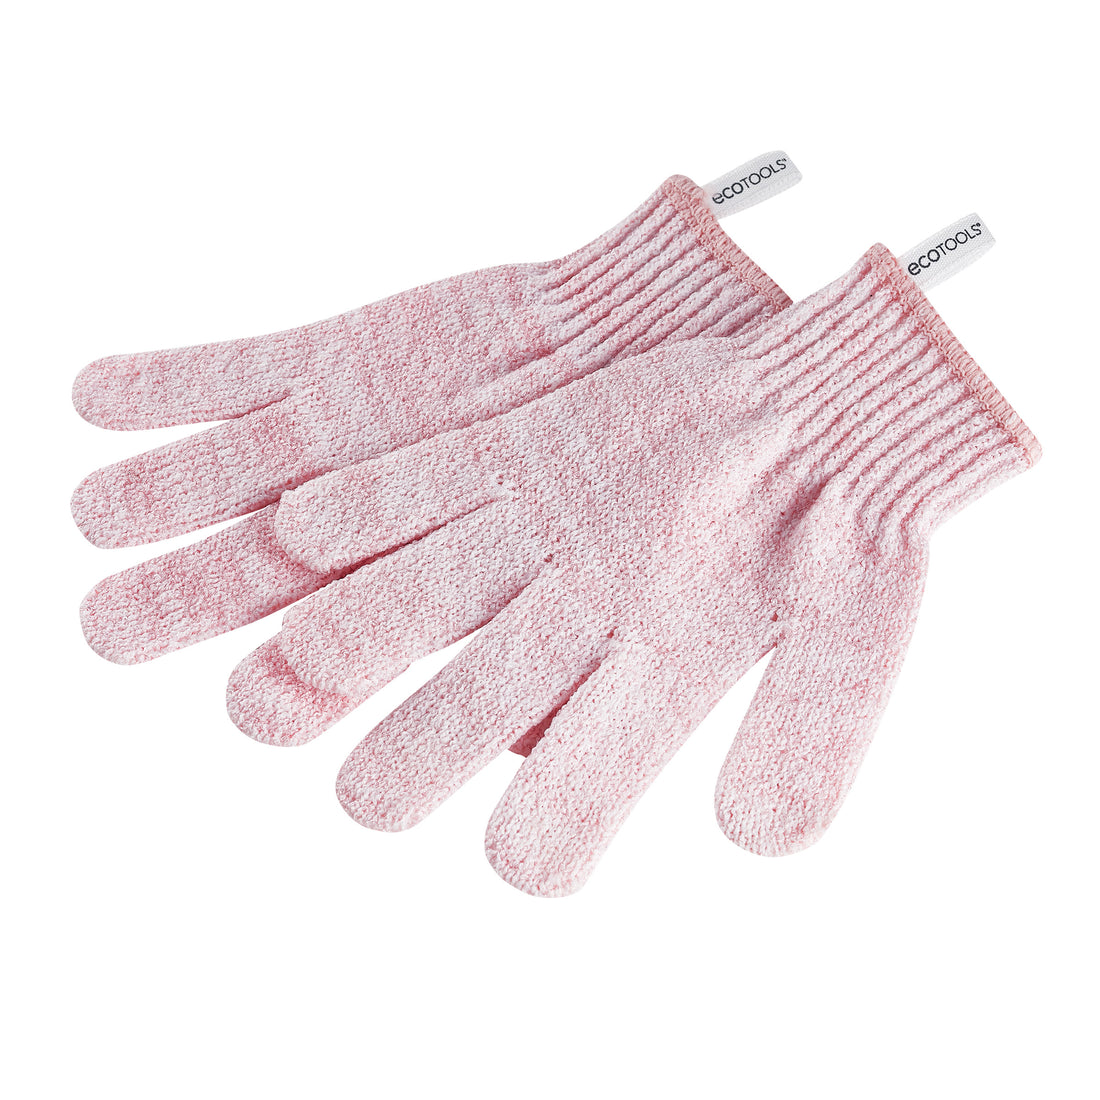 Exfoliating Bath & Shower Gloves, Pink